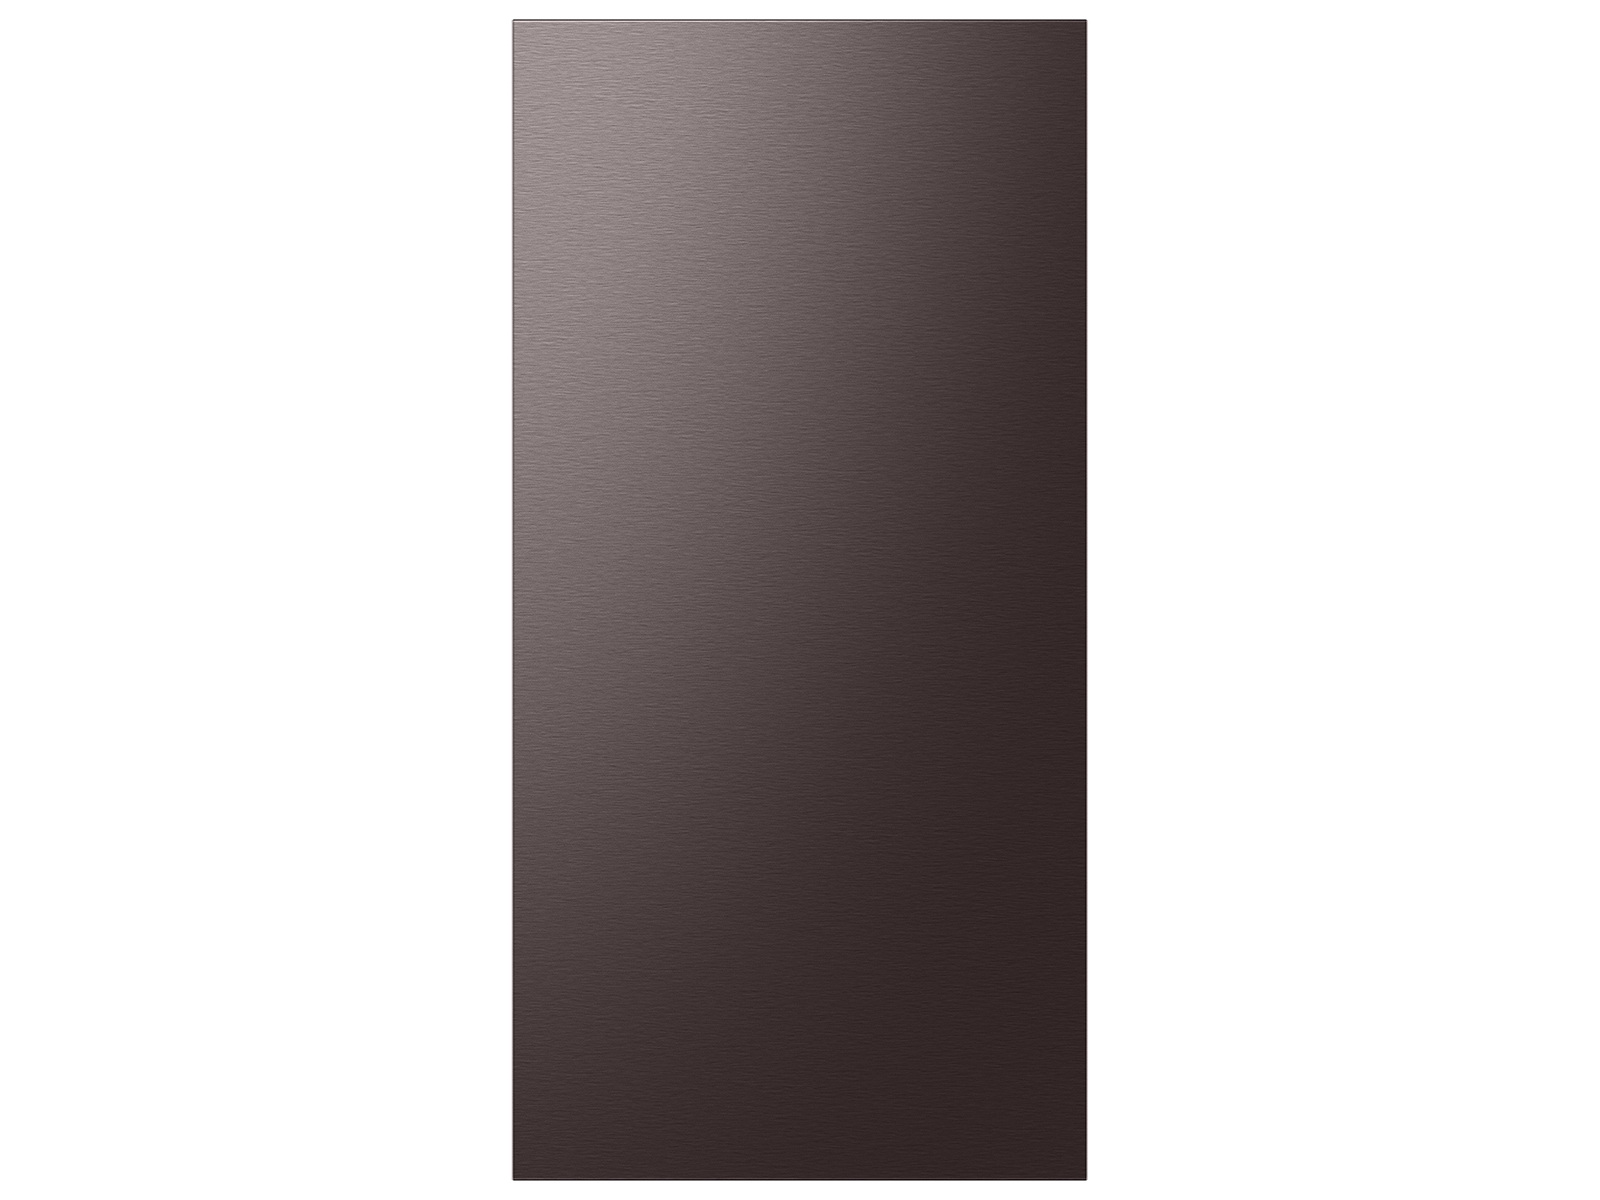 Thumbnail image of Bespoke 4-Door French Door Refrigerator Panel in Tuscan Steel - Top Panel